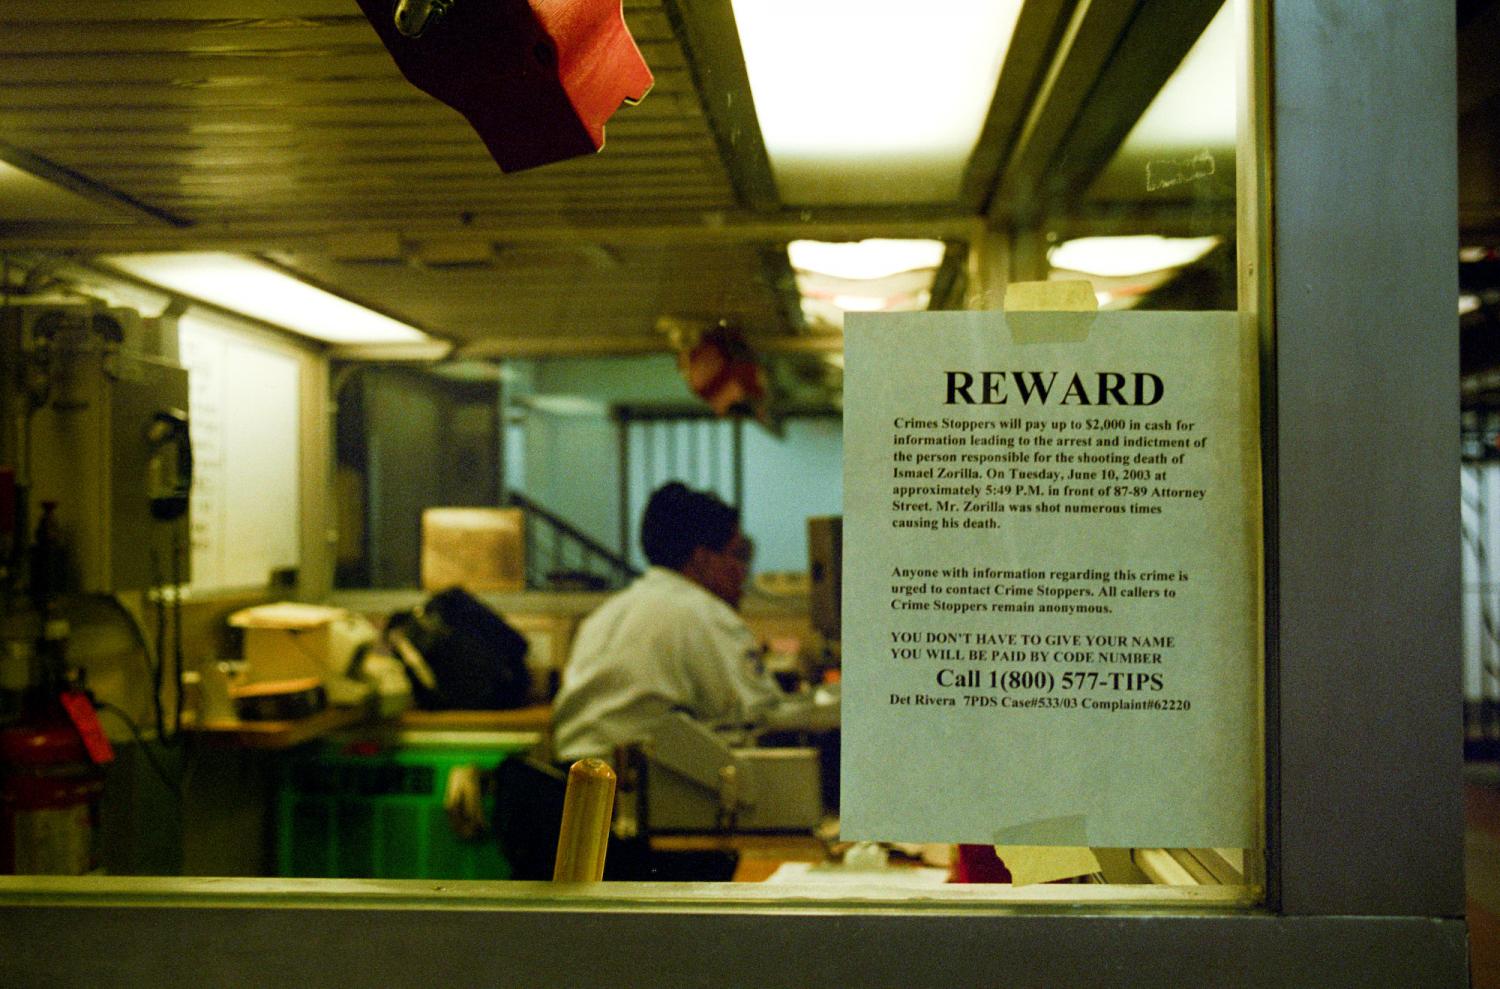 Avis de recherche sur la vitre d'un bureau ou d'une loge de concierge : une récompense est proposée par les Crime Stoppers en échange d'informations sur un meurtre. New York, juin 2003.